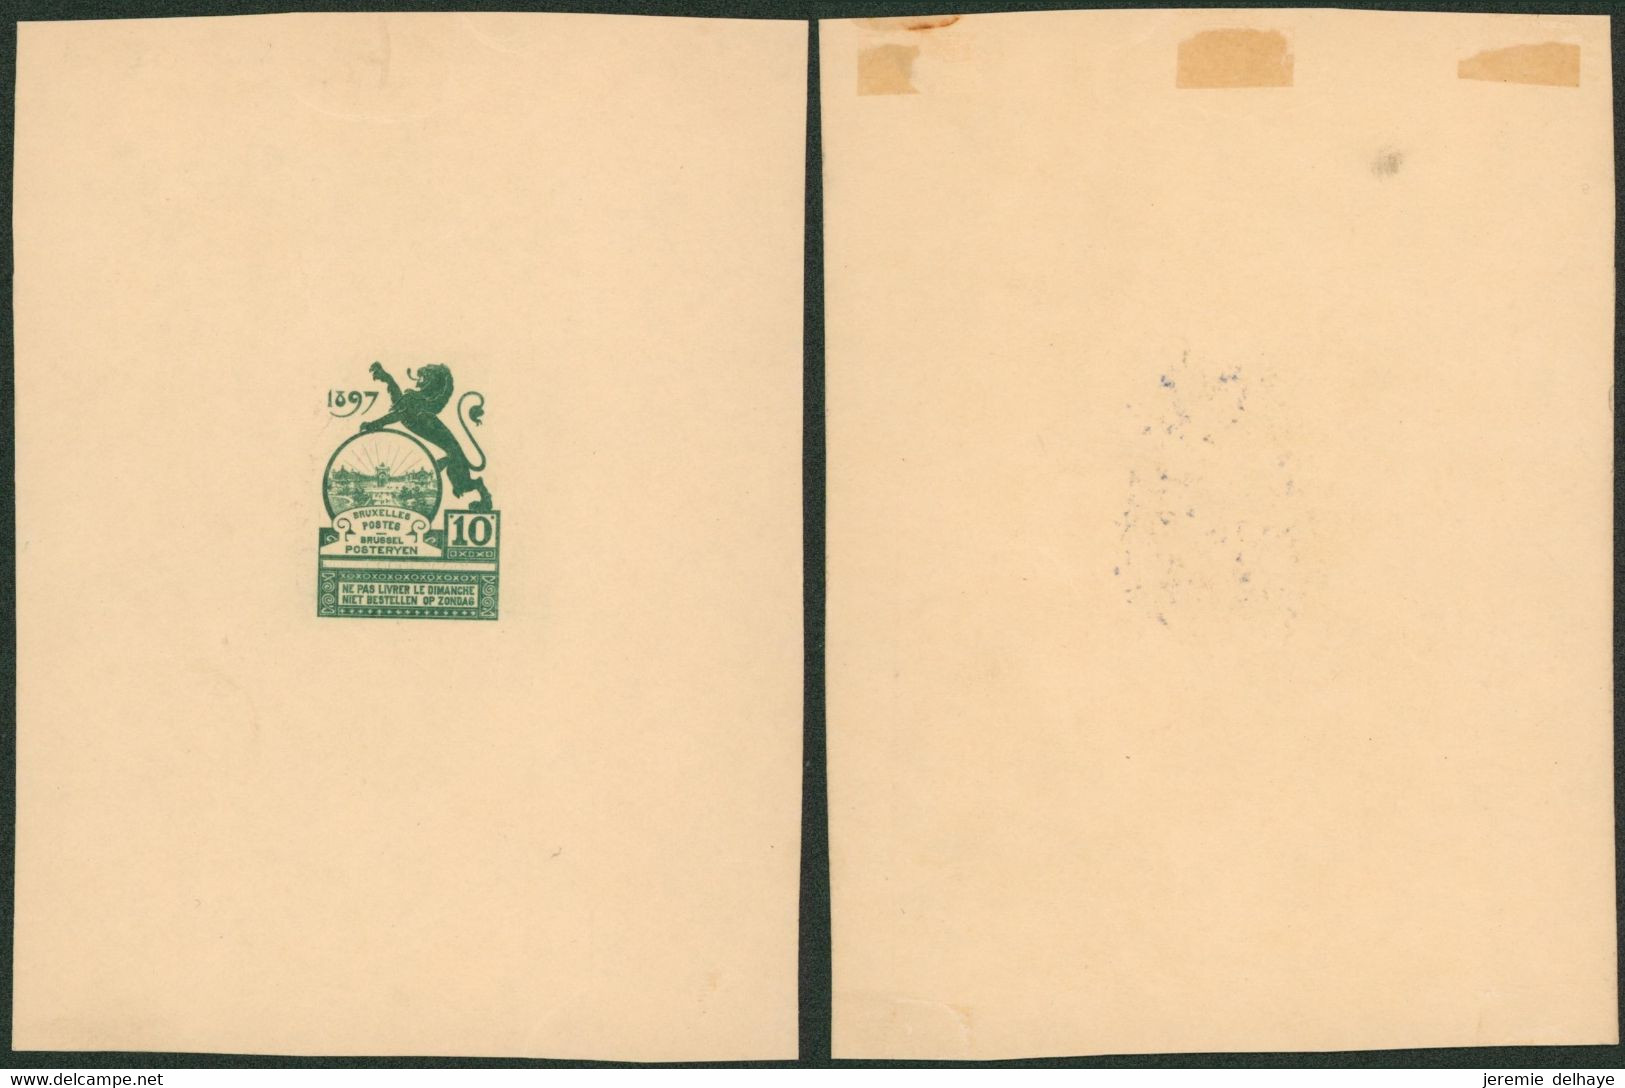 Essai - Proposition Du Peintre Louis Titz (Bruxelles Expositions 1897) Sur Papier Carton Crème (1 Couleur) : STES 2221 - Proeven & Herdruk